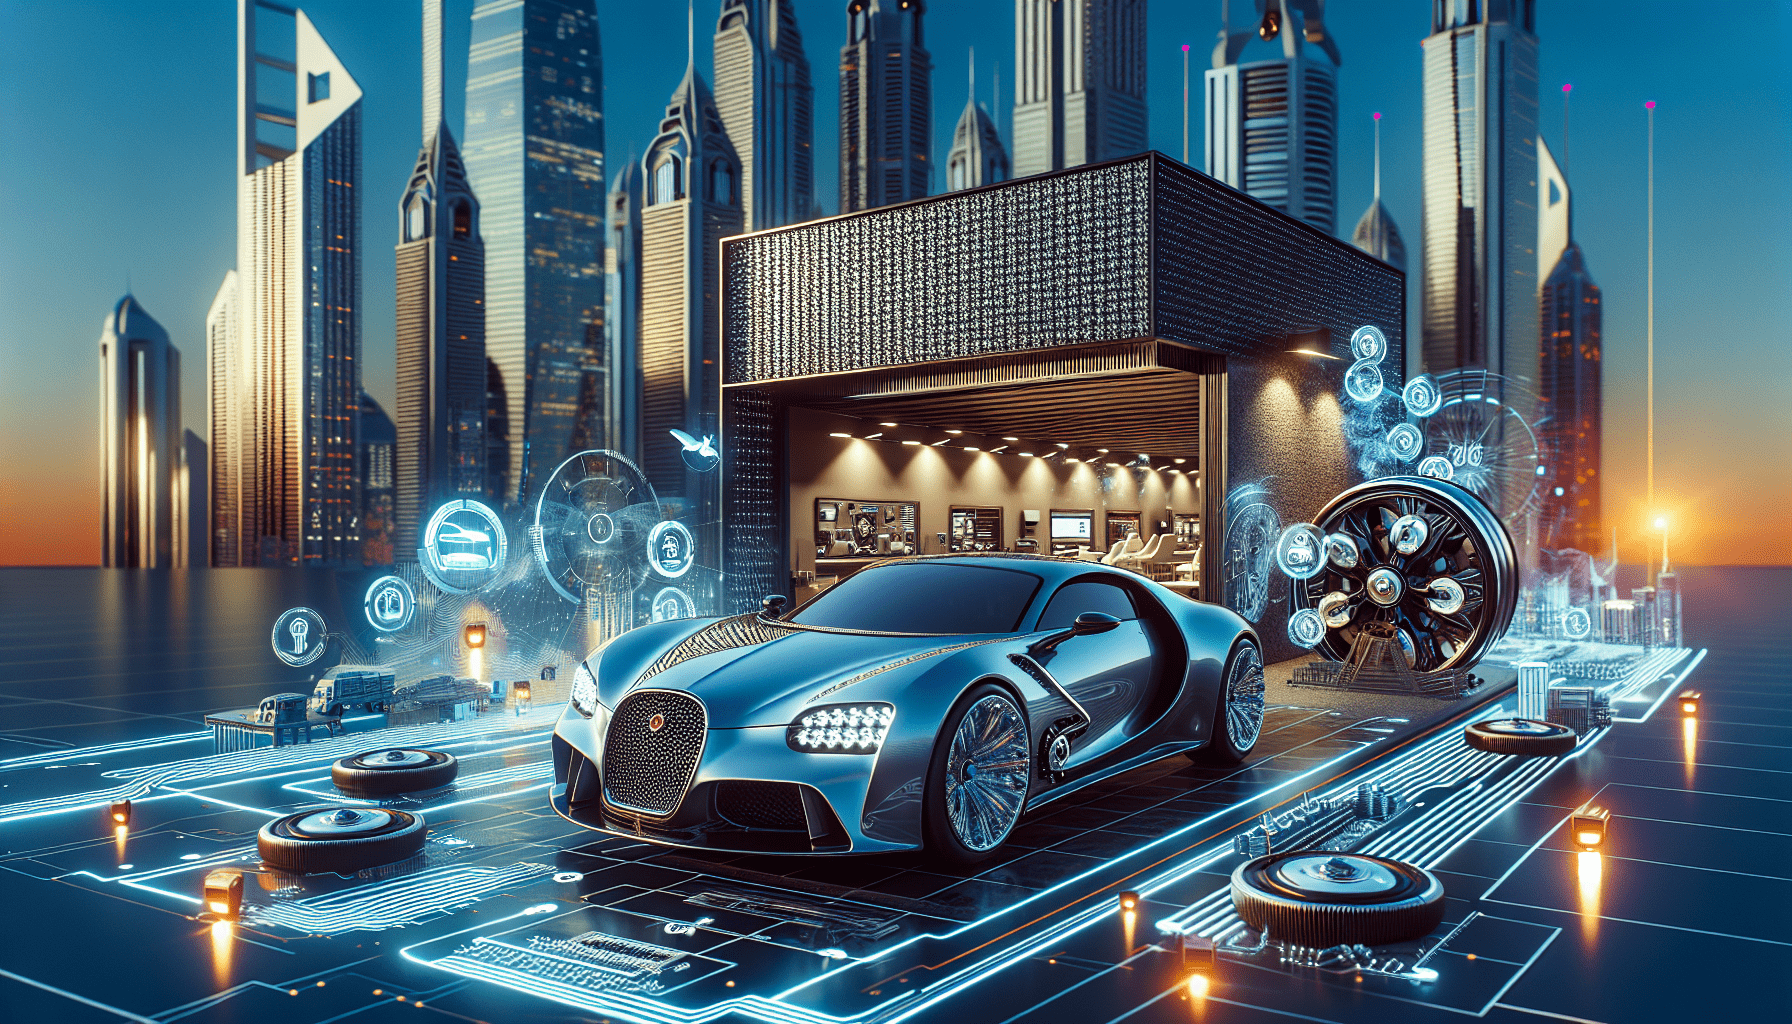 How to Get a Dubai Auto Garage Business License